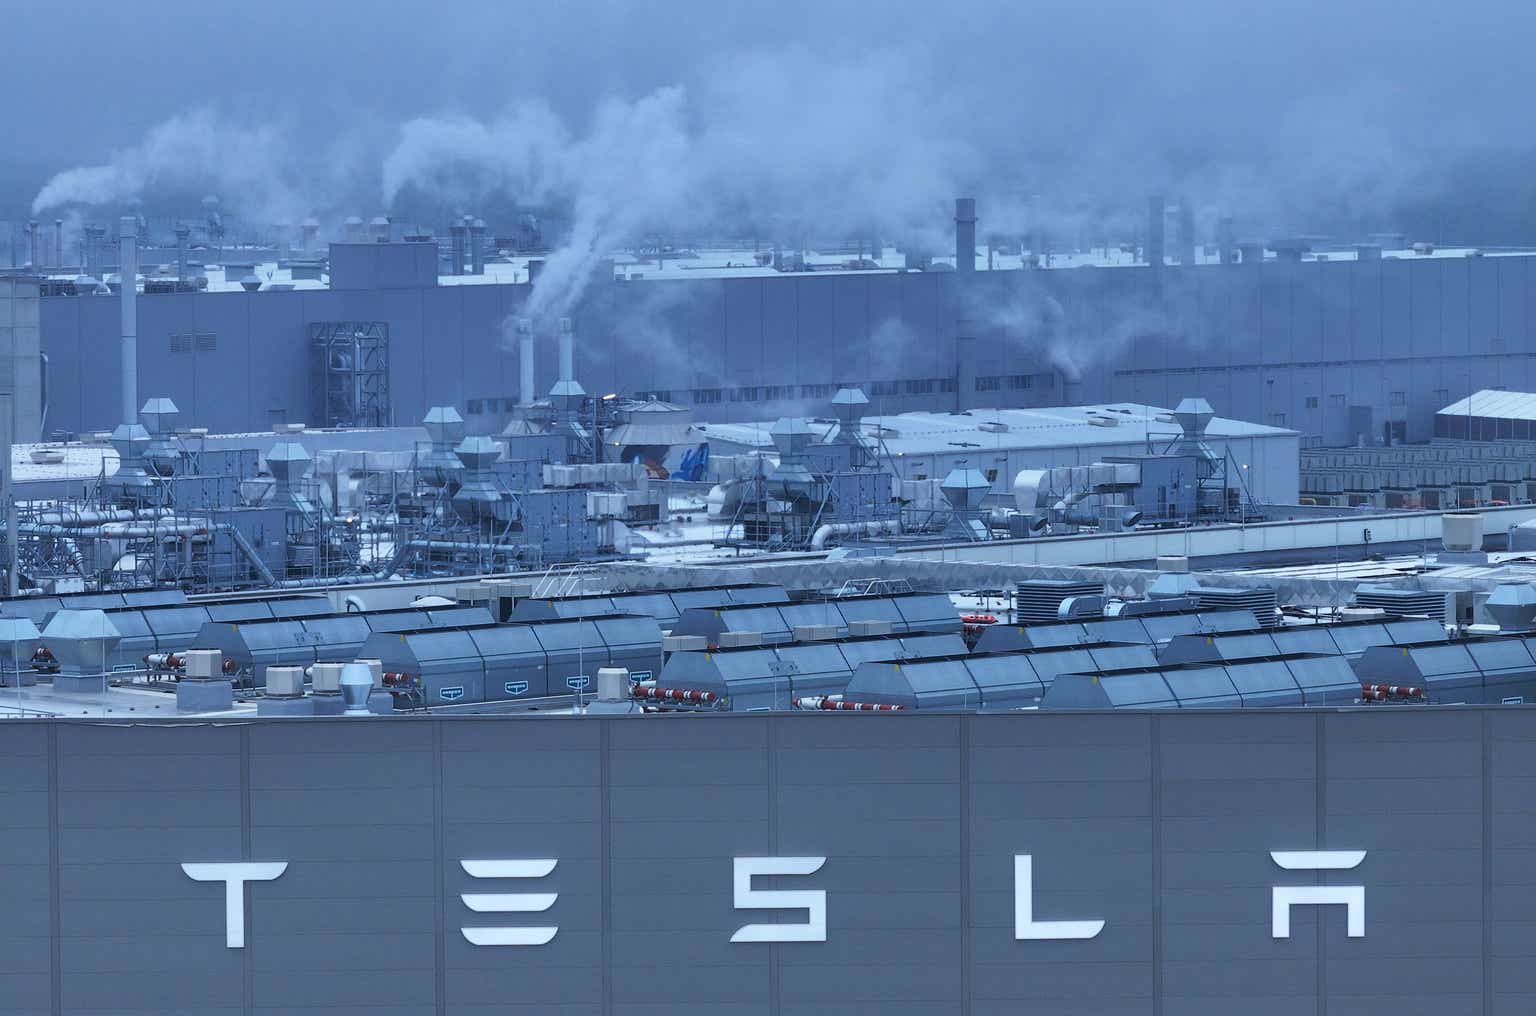 Wall-Street-Mittagessen: Klimaaktivisten nehmen Teslas deutsches Werk ins Visier?